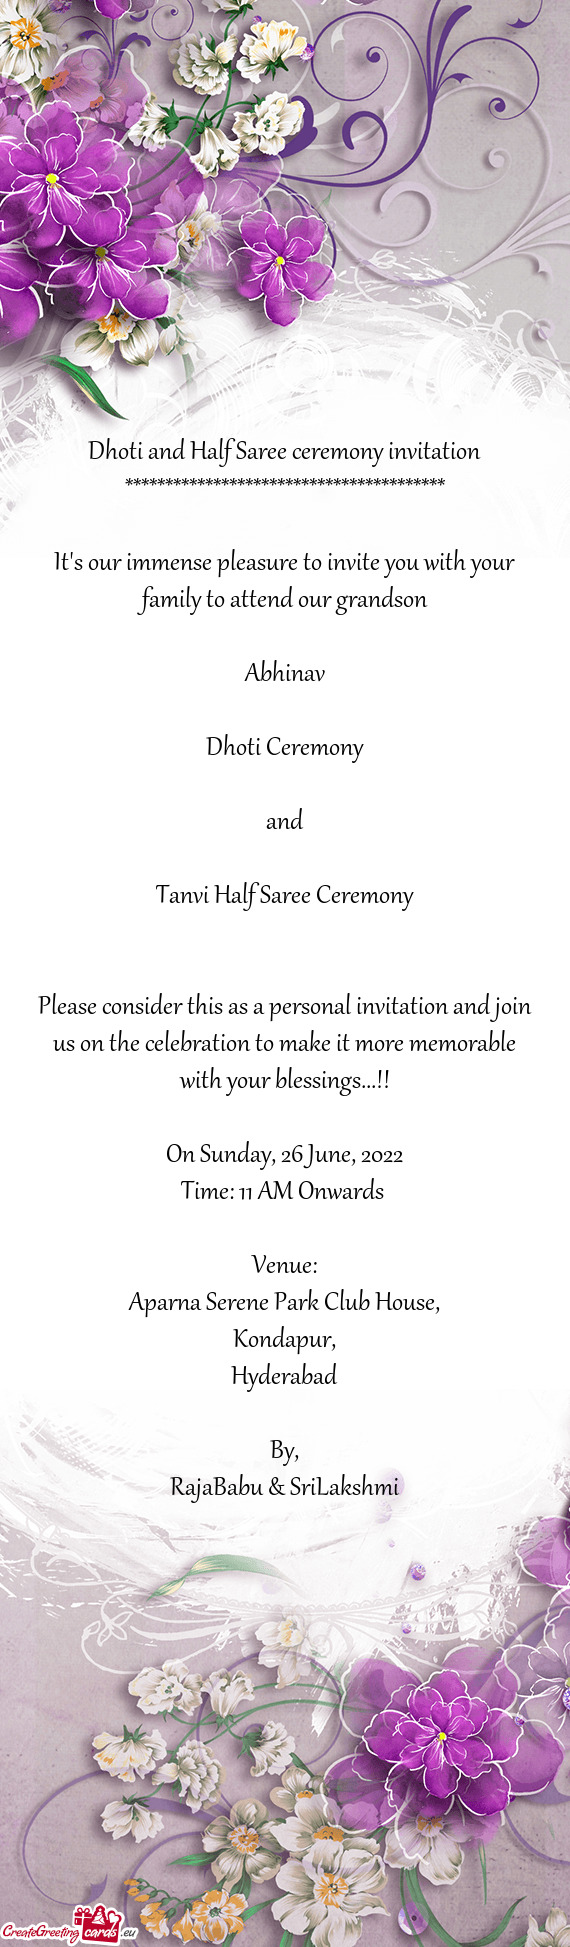 Tanvi Half Saree Ceremony